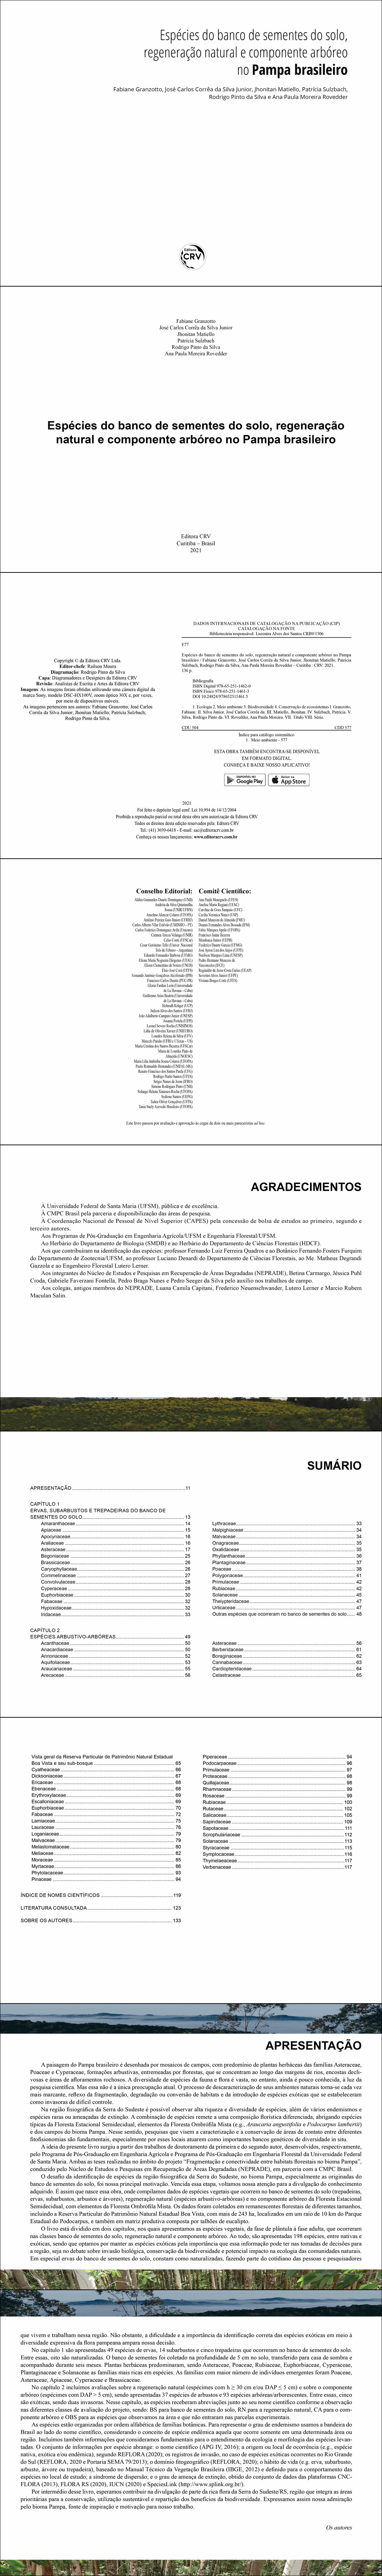 Espécies do banco de sementes do solo, regeneração natural e componente arbóreo no Pampa brasileiro